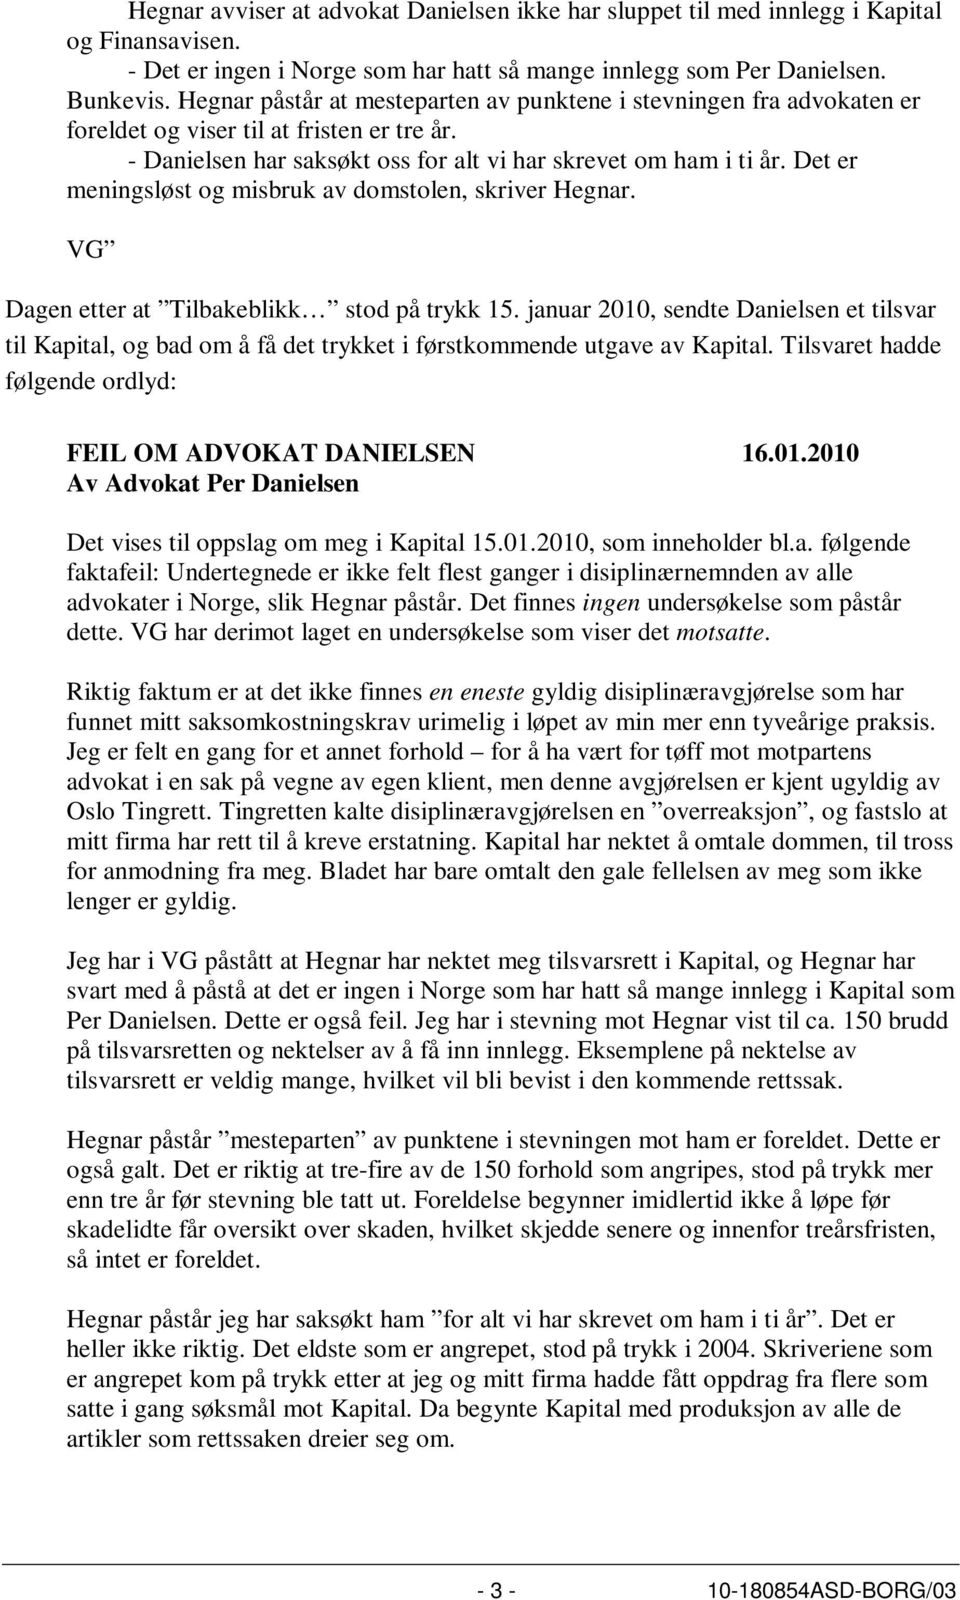 Det er meningsløst og misbruk av domstolen, skriver Hegnar. VG Dagen etter at Tilbakeblikk stod på trykk 15.